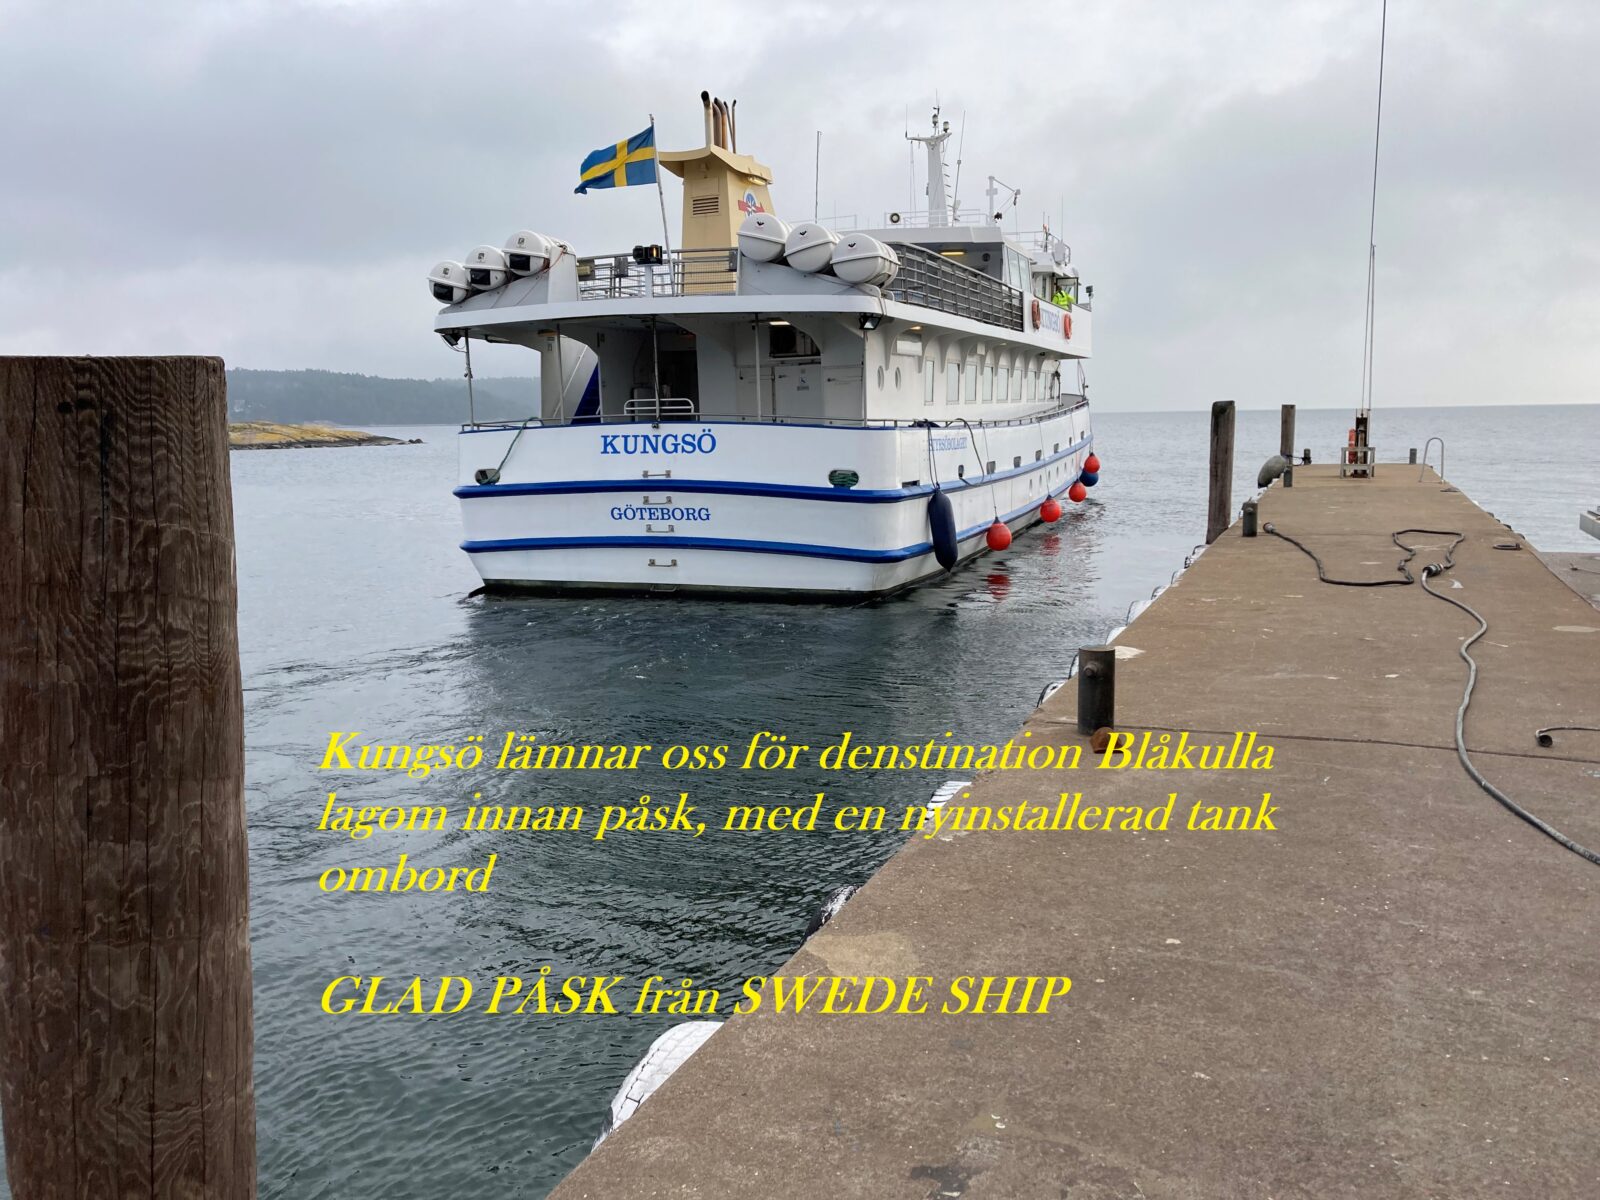 swede ship yachtservice ab